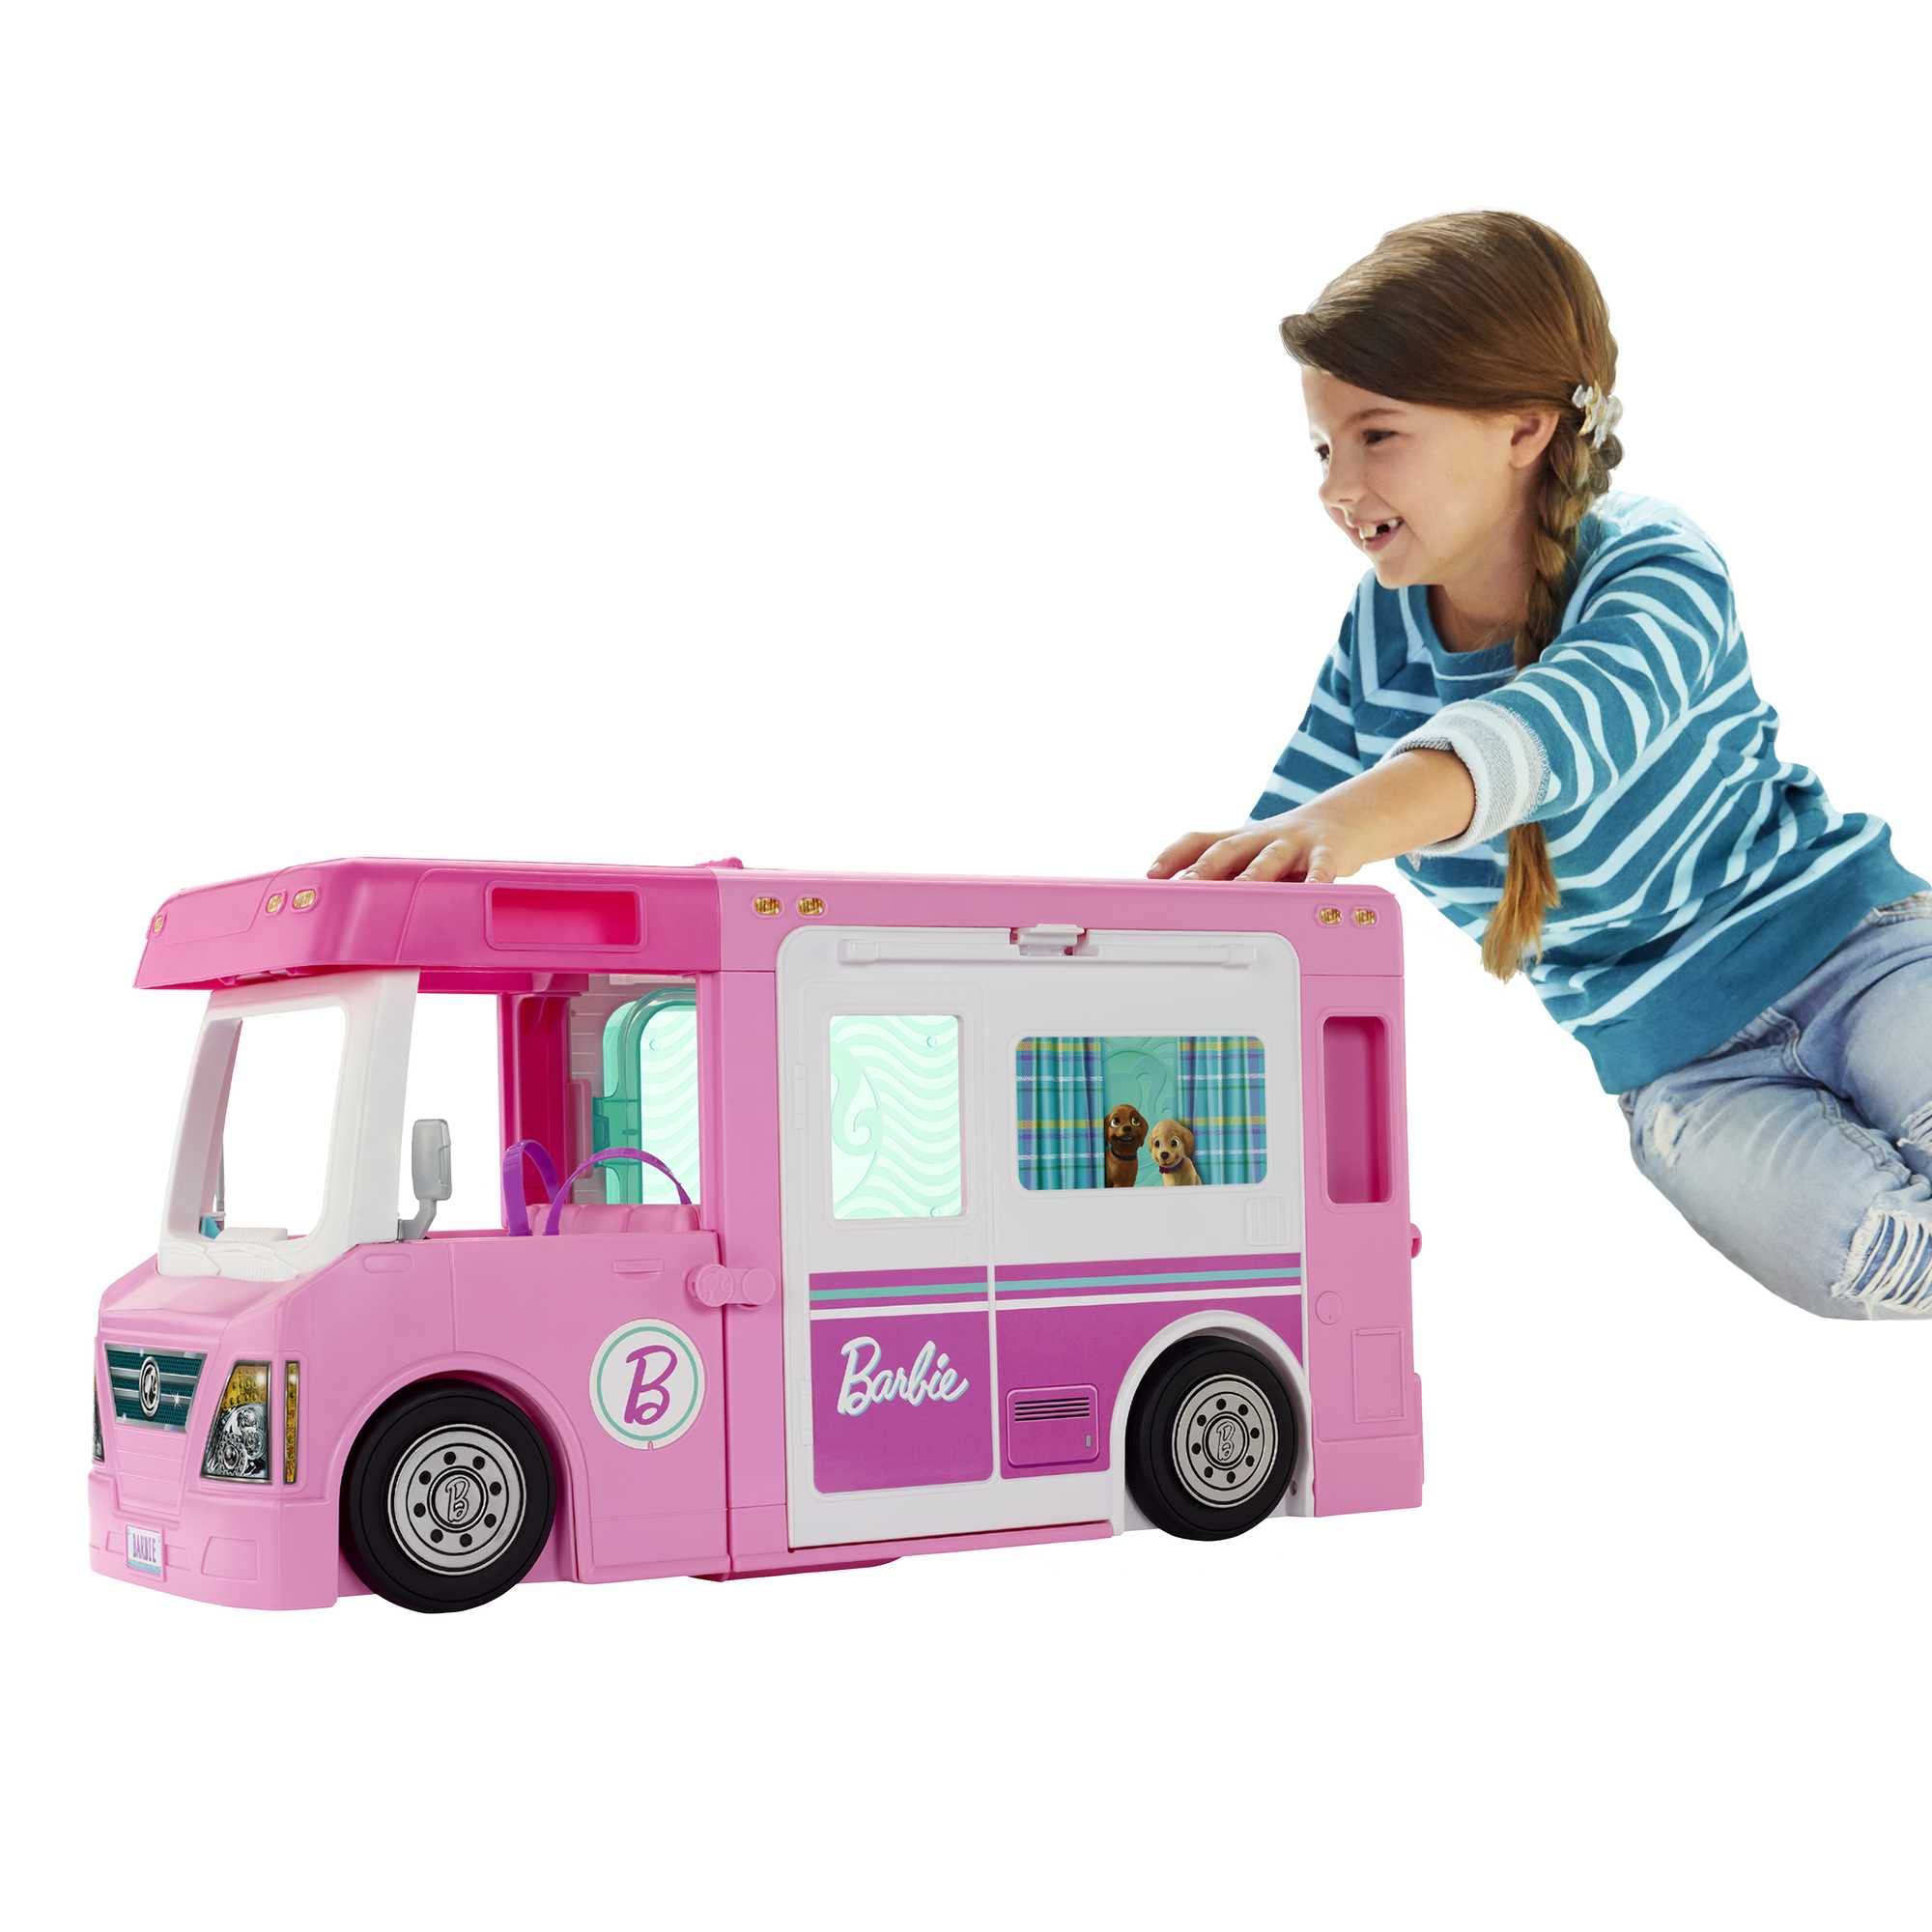 Populaire Barbie Camping-Car De Rêve 3-en-1, Entièrement Meublé avec Piscine, Pick-Up 4 Places, Et Bateau, Plus de 60 Accessoires Inclus, Un Camping-Car, Jouet pour Enfant de 3 Ans et Plus, GHL93 xLqD117DY stylé 